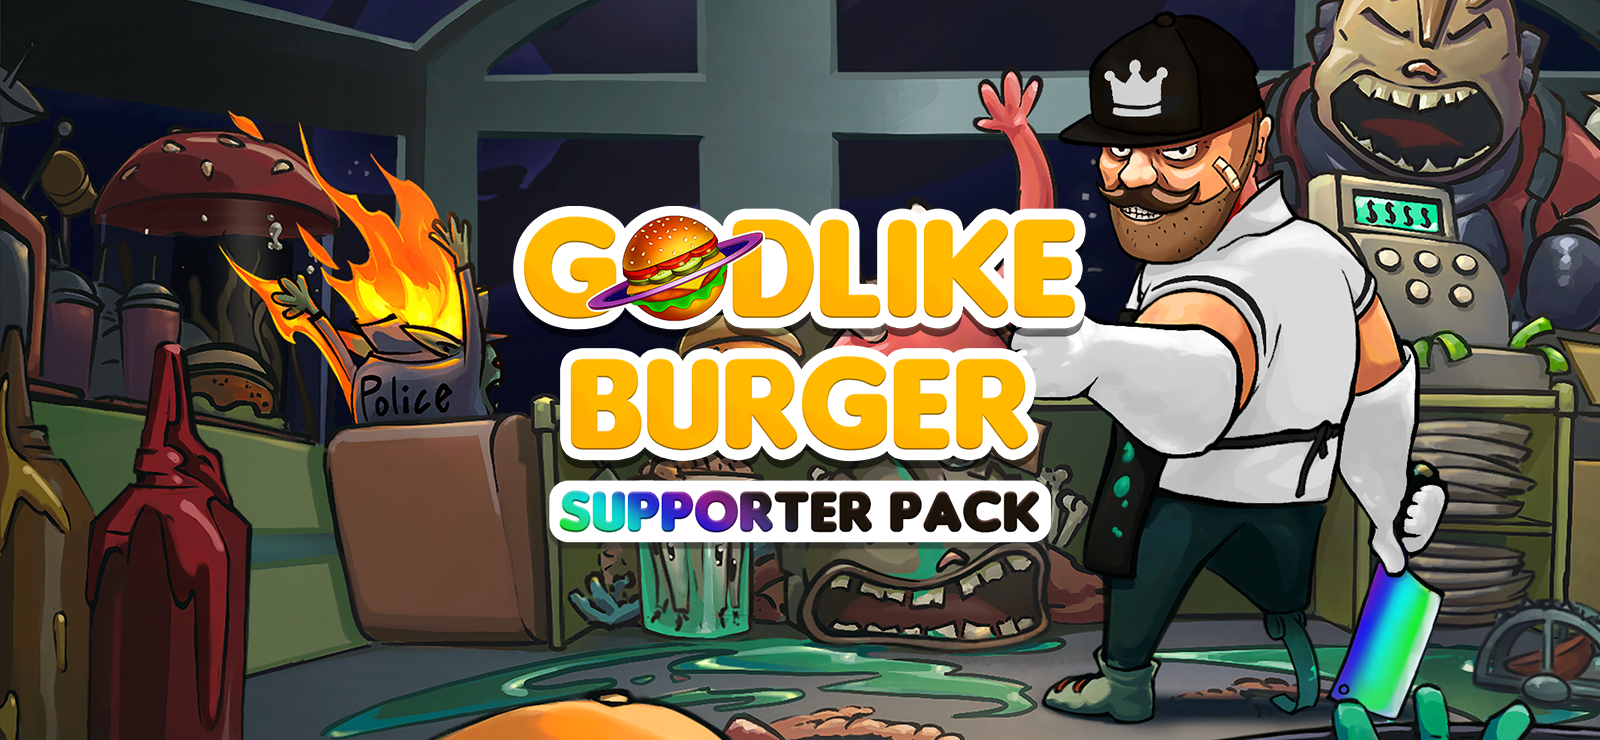 Godlike Burger – Supporter Pack